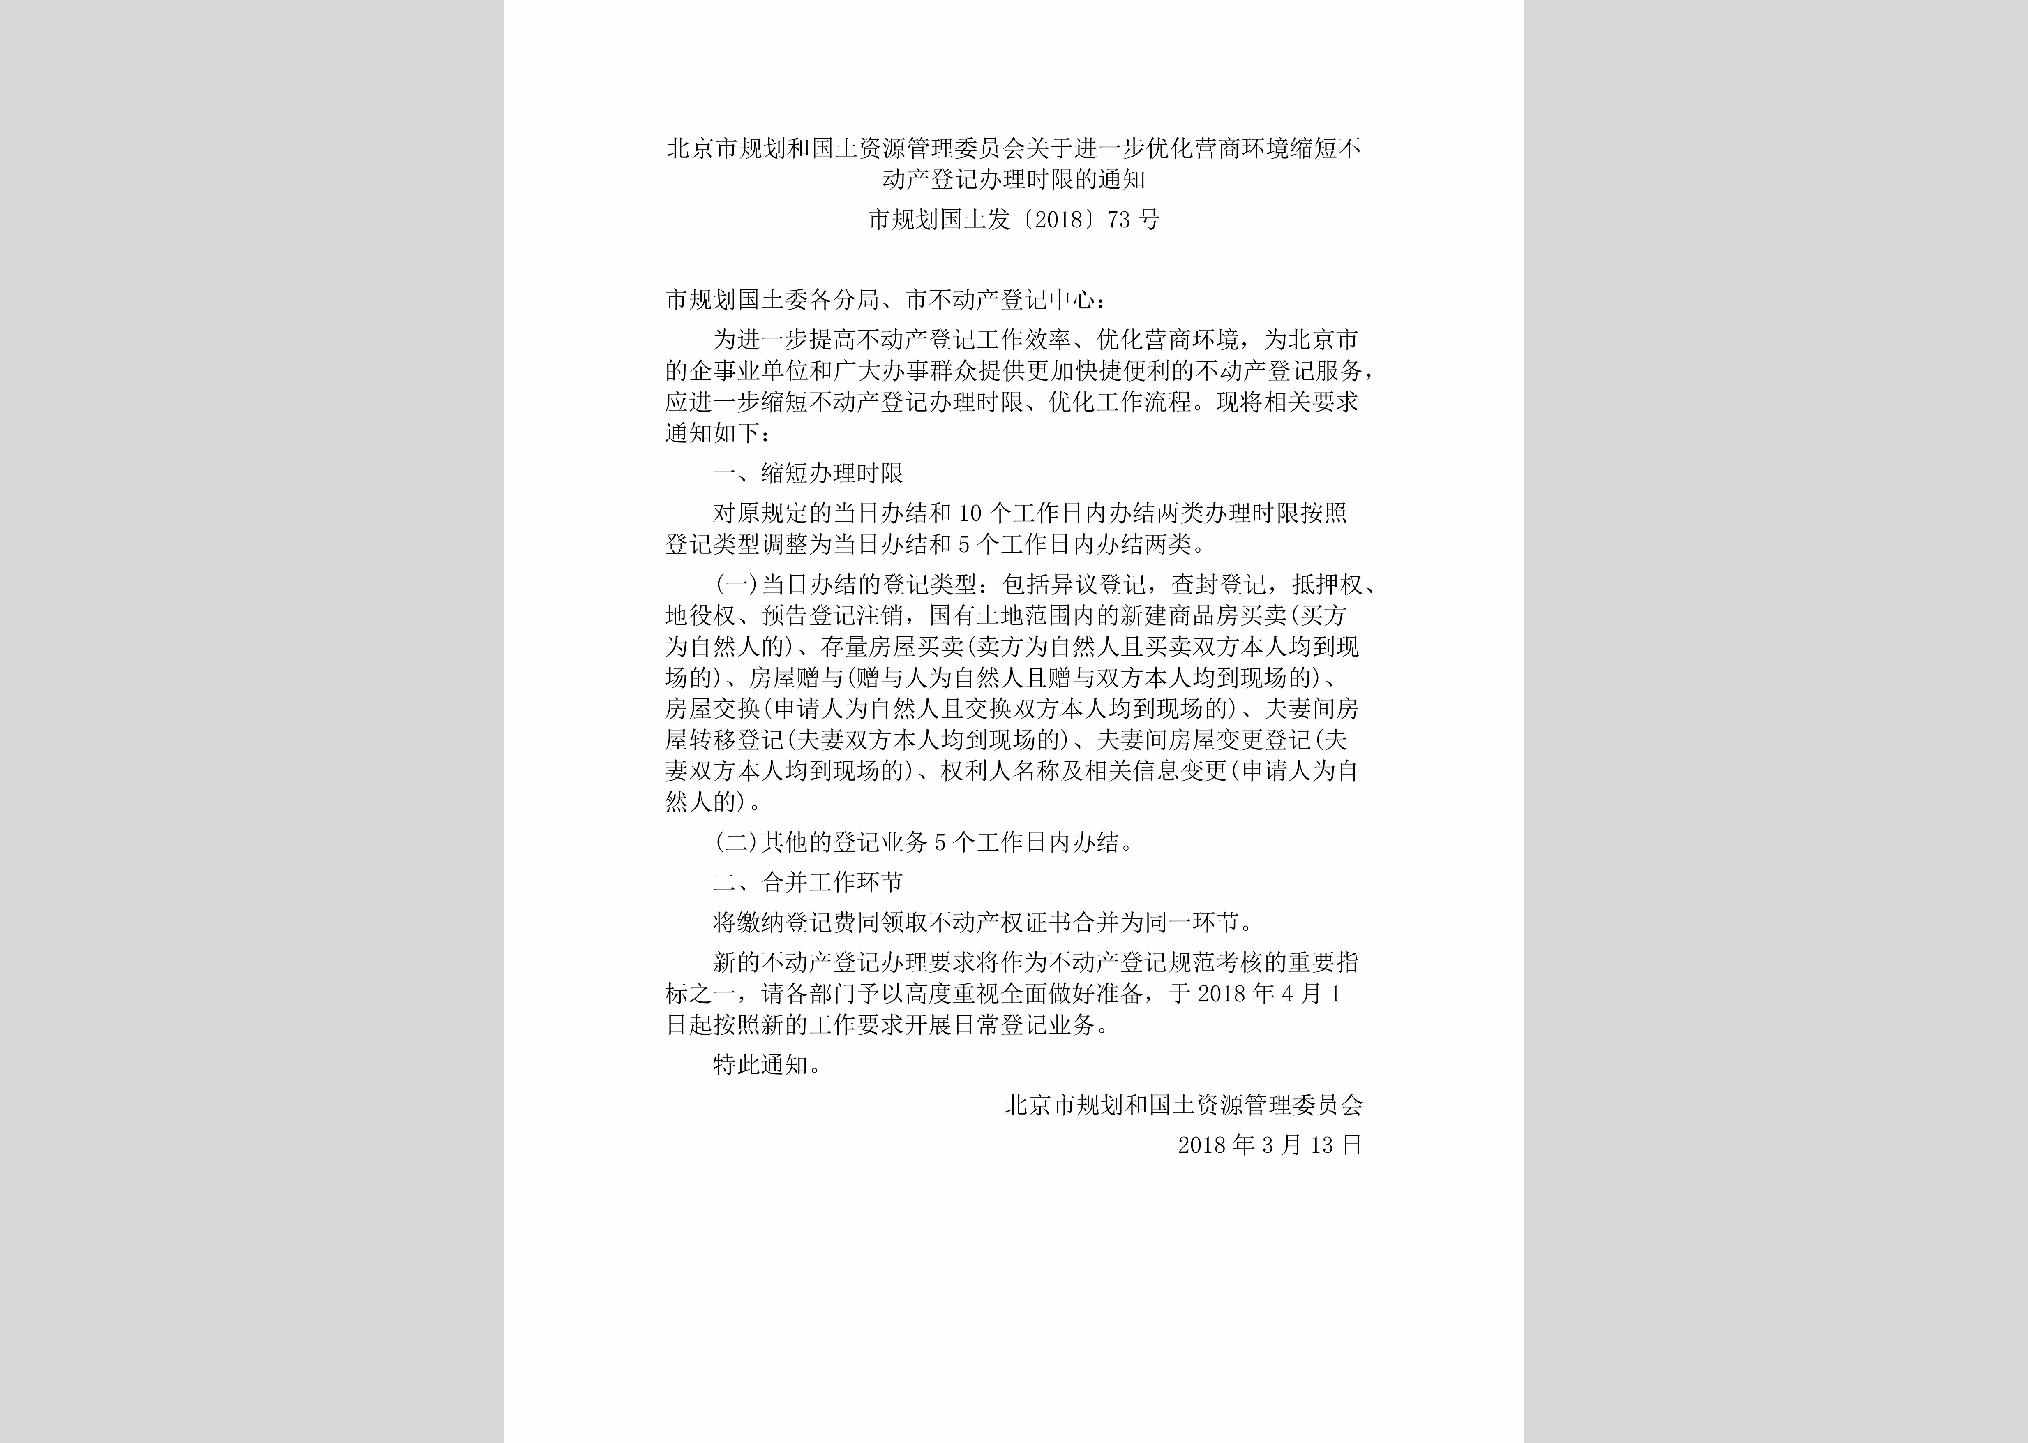 市规划国土发[2018]73号：北京市规划和国土资源管理委员会关于进一步优化营商环境缩短不动产登记办理时限的通知